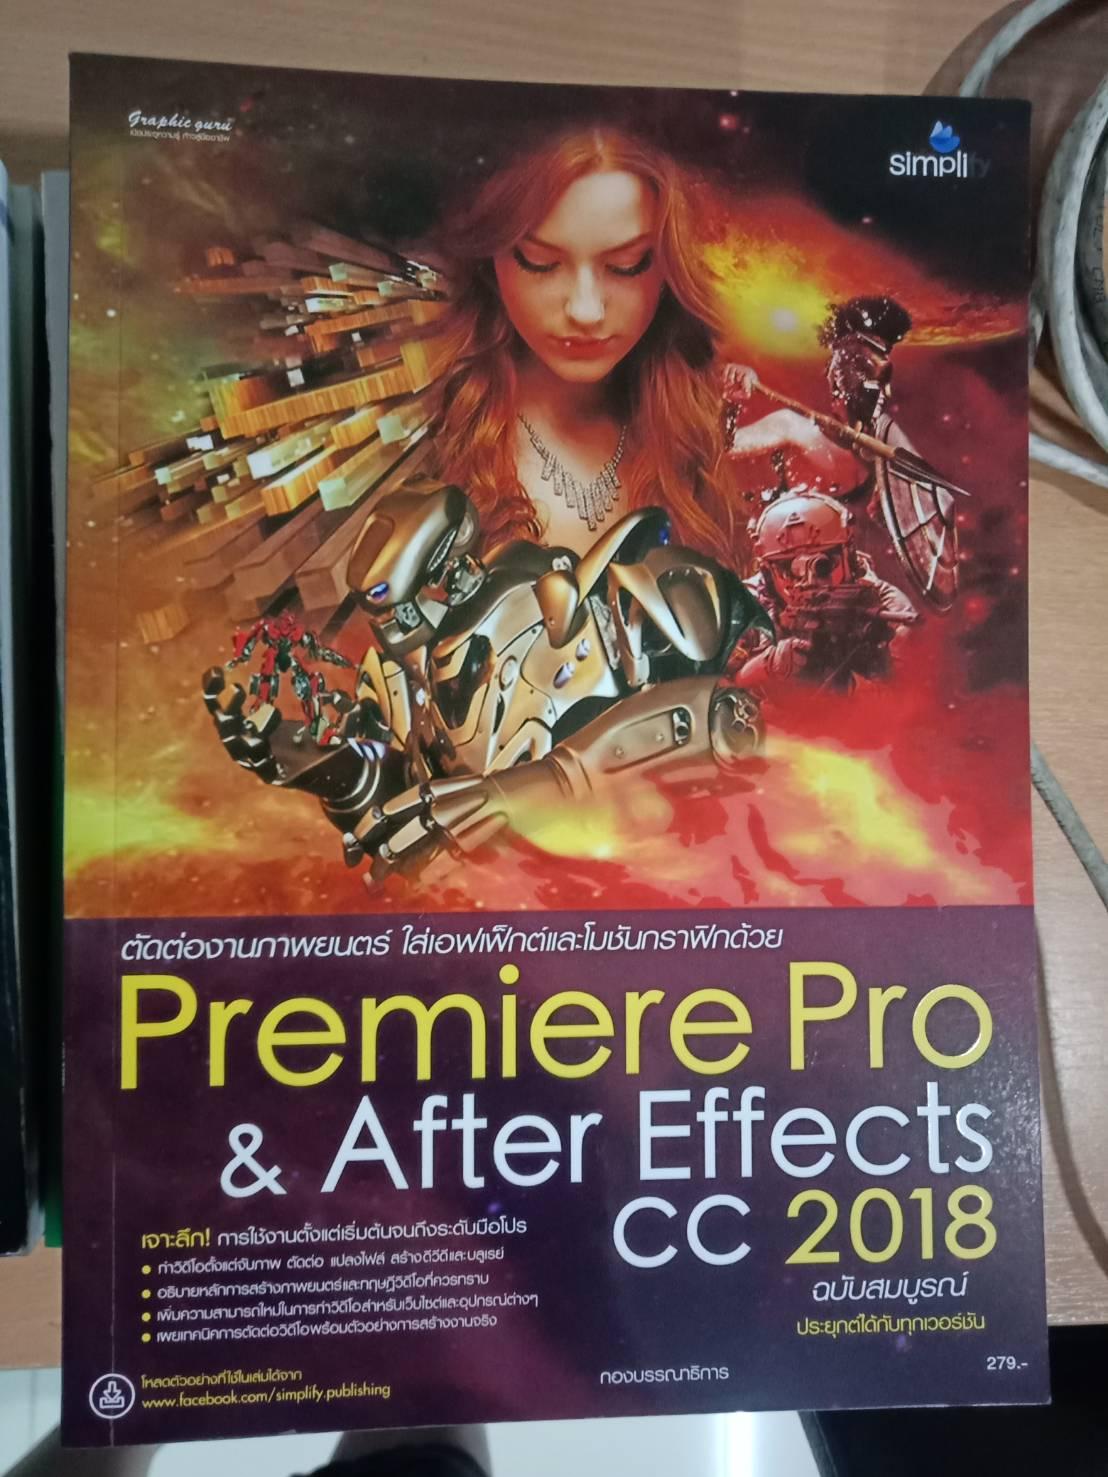 ตัดต่องานภาพยนตร์ ใส่เอฟเฟ็กต์และโมชันกราฟิกด้วย Premiere Pro & After Effects CC 2018 ฉบับสมบูรณ์